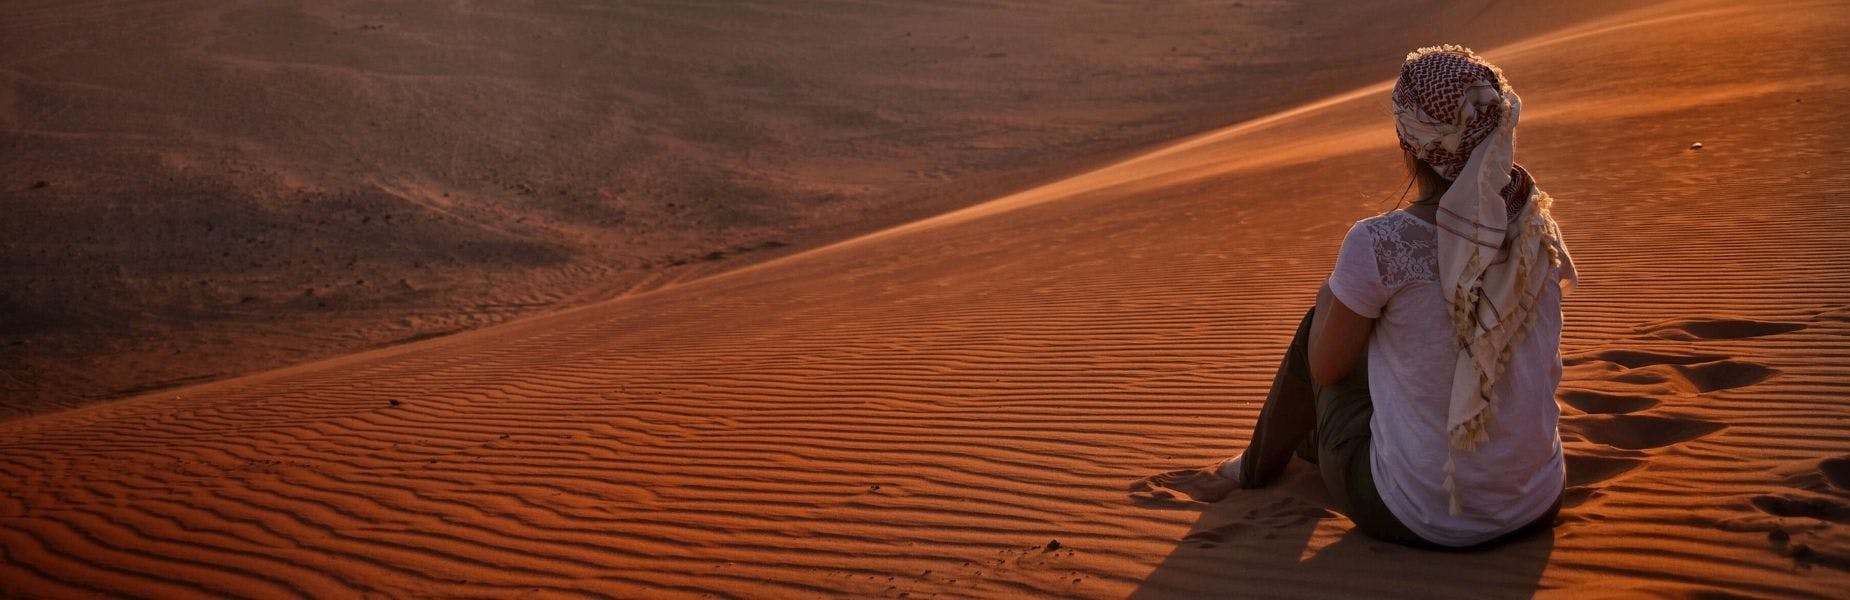 persoon vanaf de achterkant zittend in de woestijn Jordanië